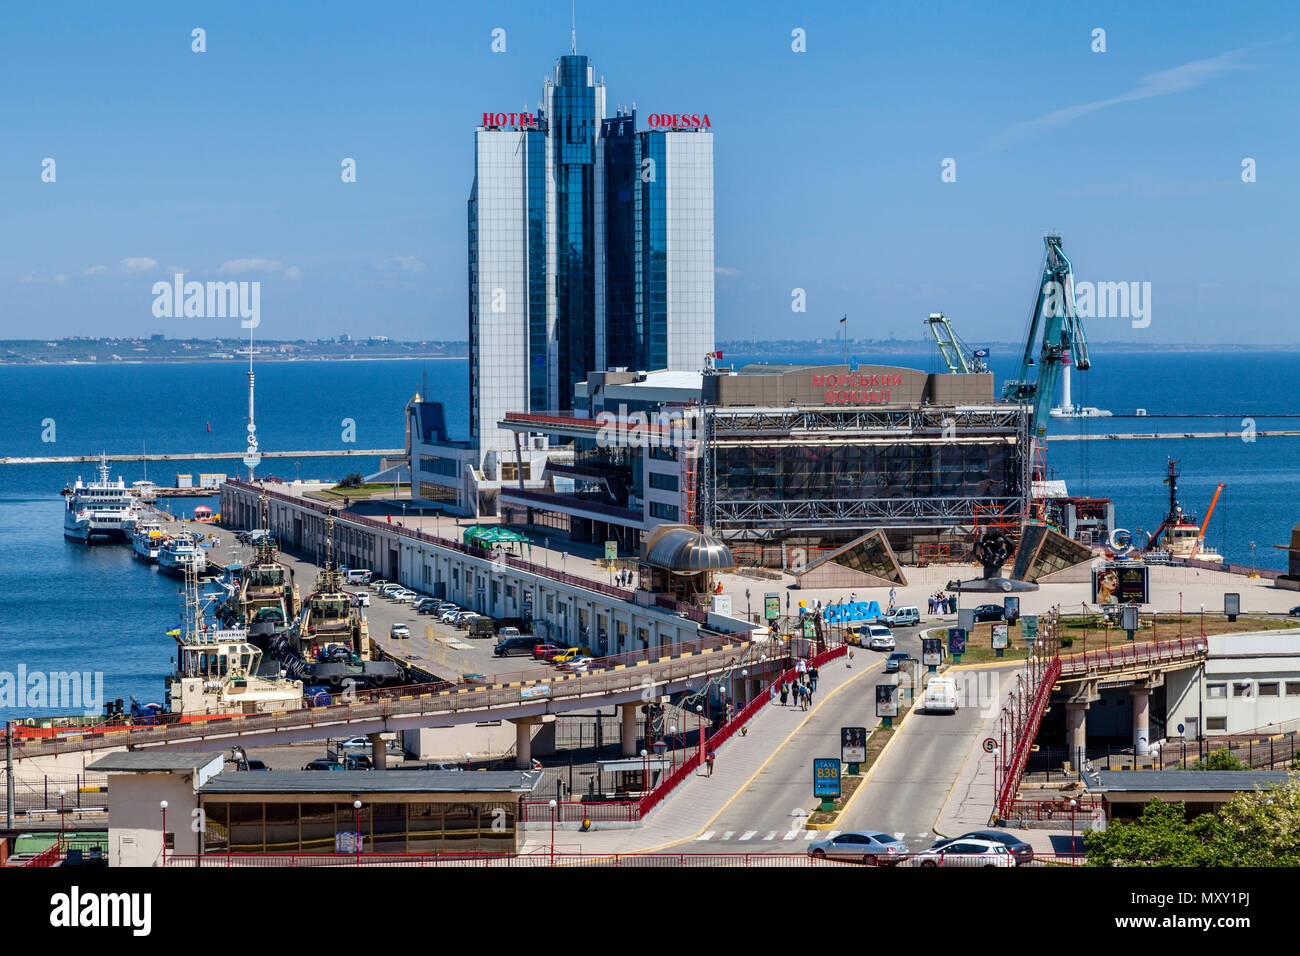 El puerto de Odessa, Odessa, Ucrania Fotografía de stock - Alamy